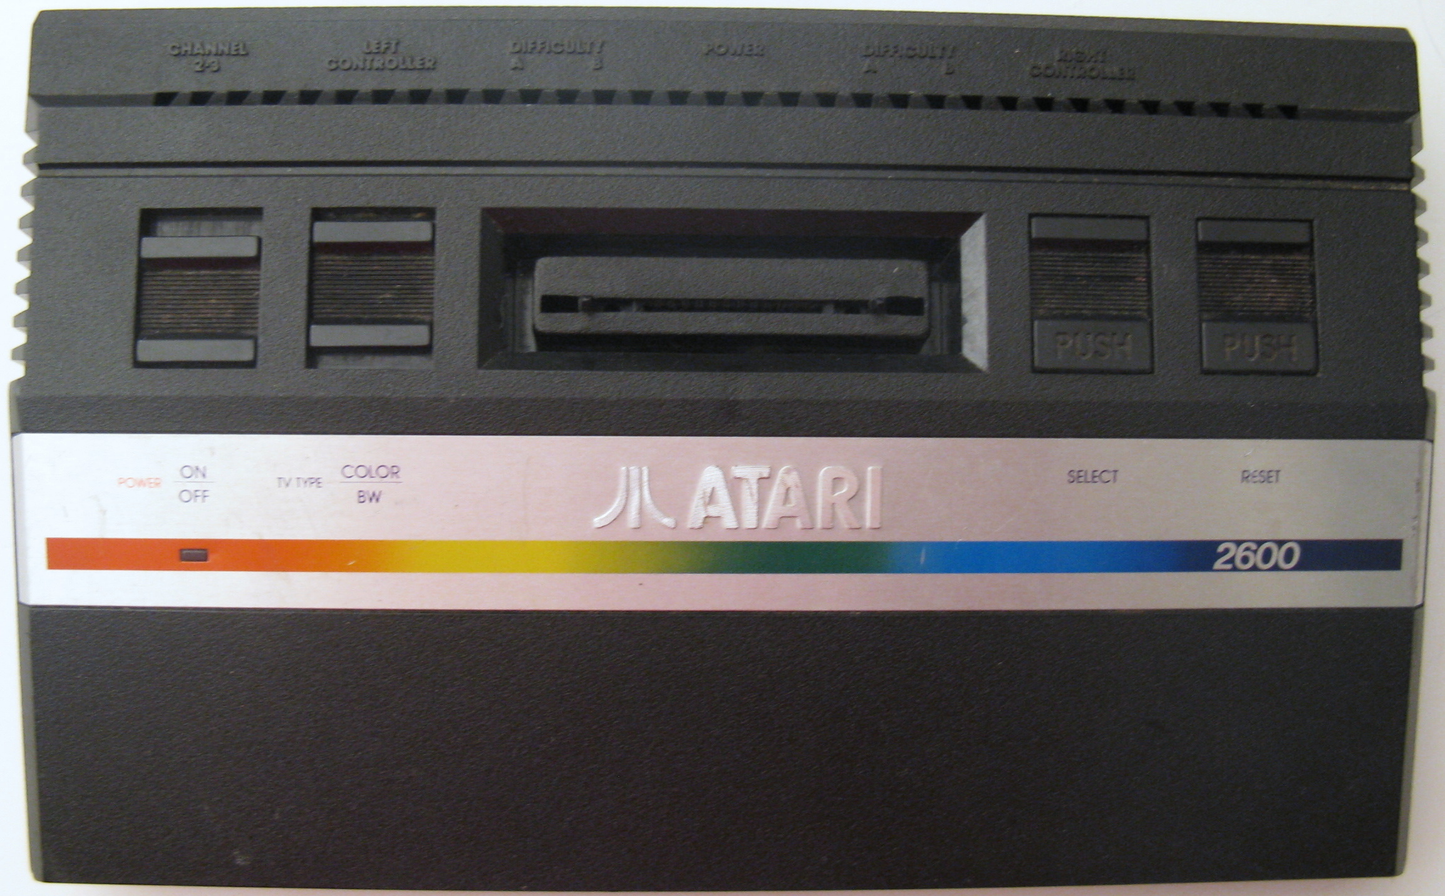 Console System 2600 | Junior - Atari 2600